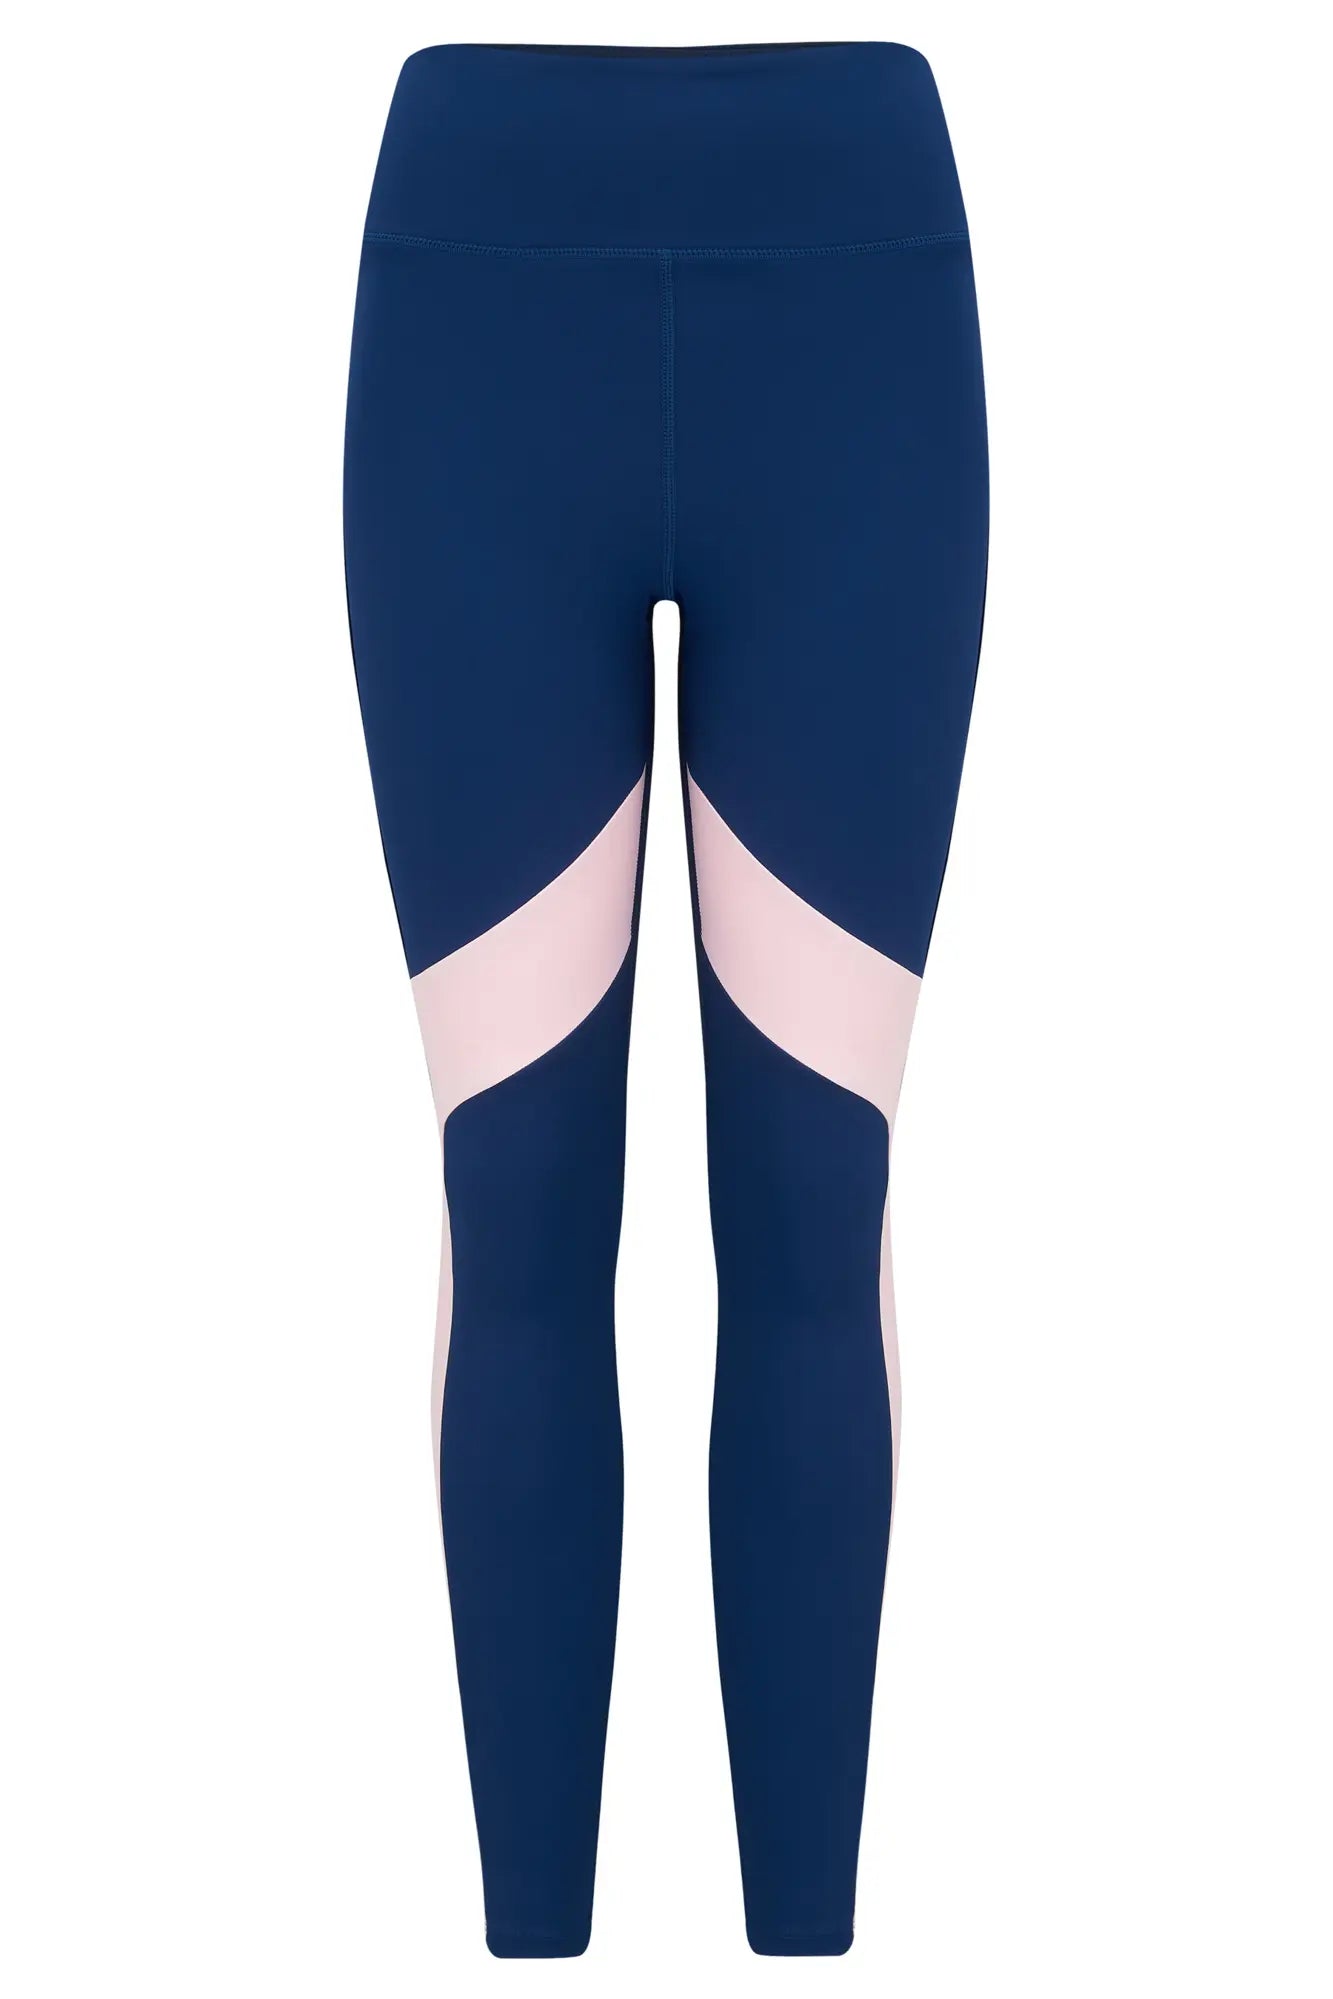 Women's training leggings Gymshark Pulse white/blue 